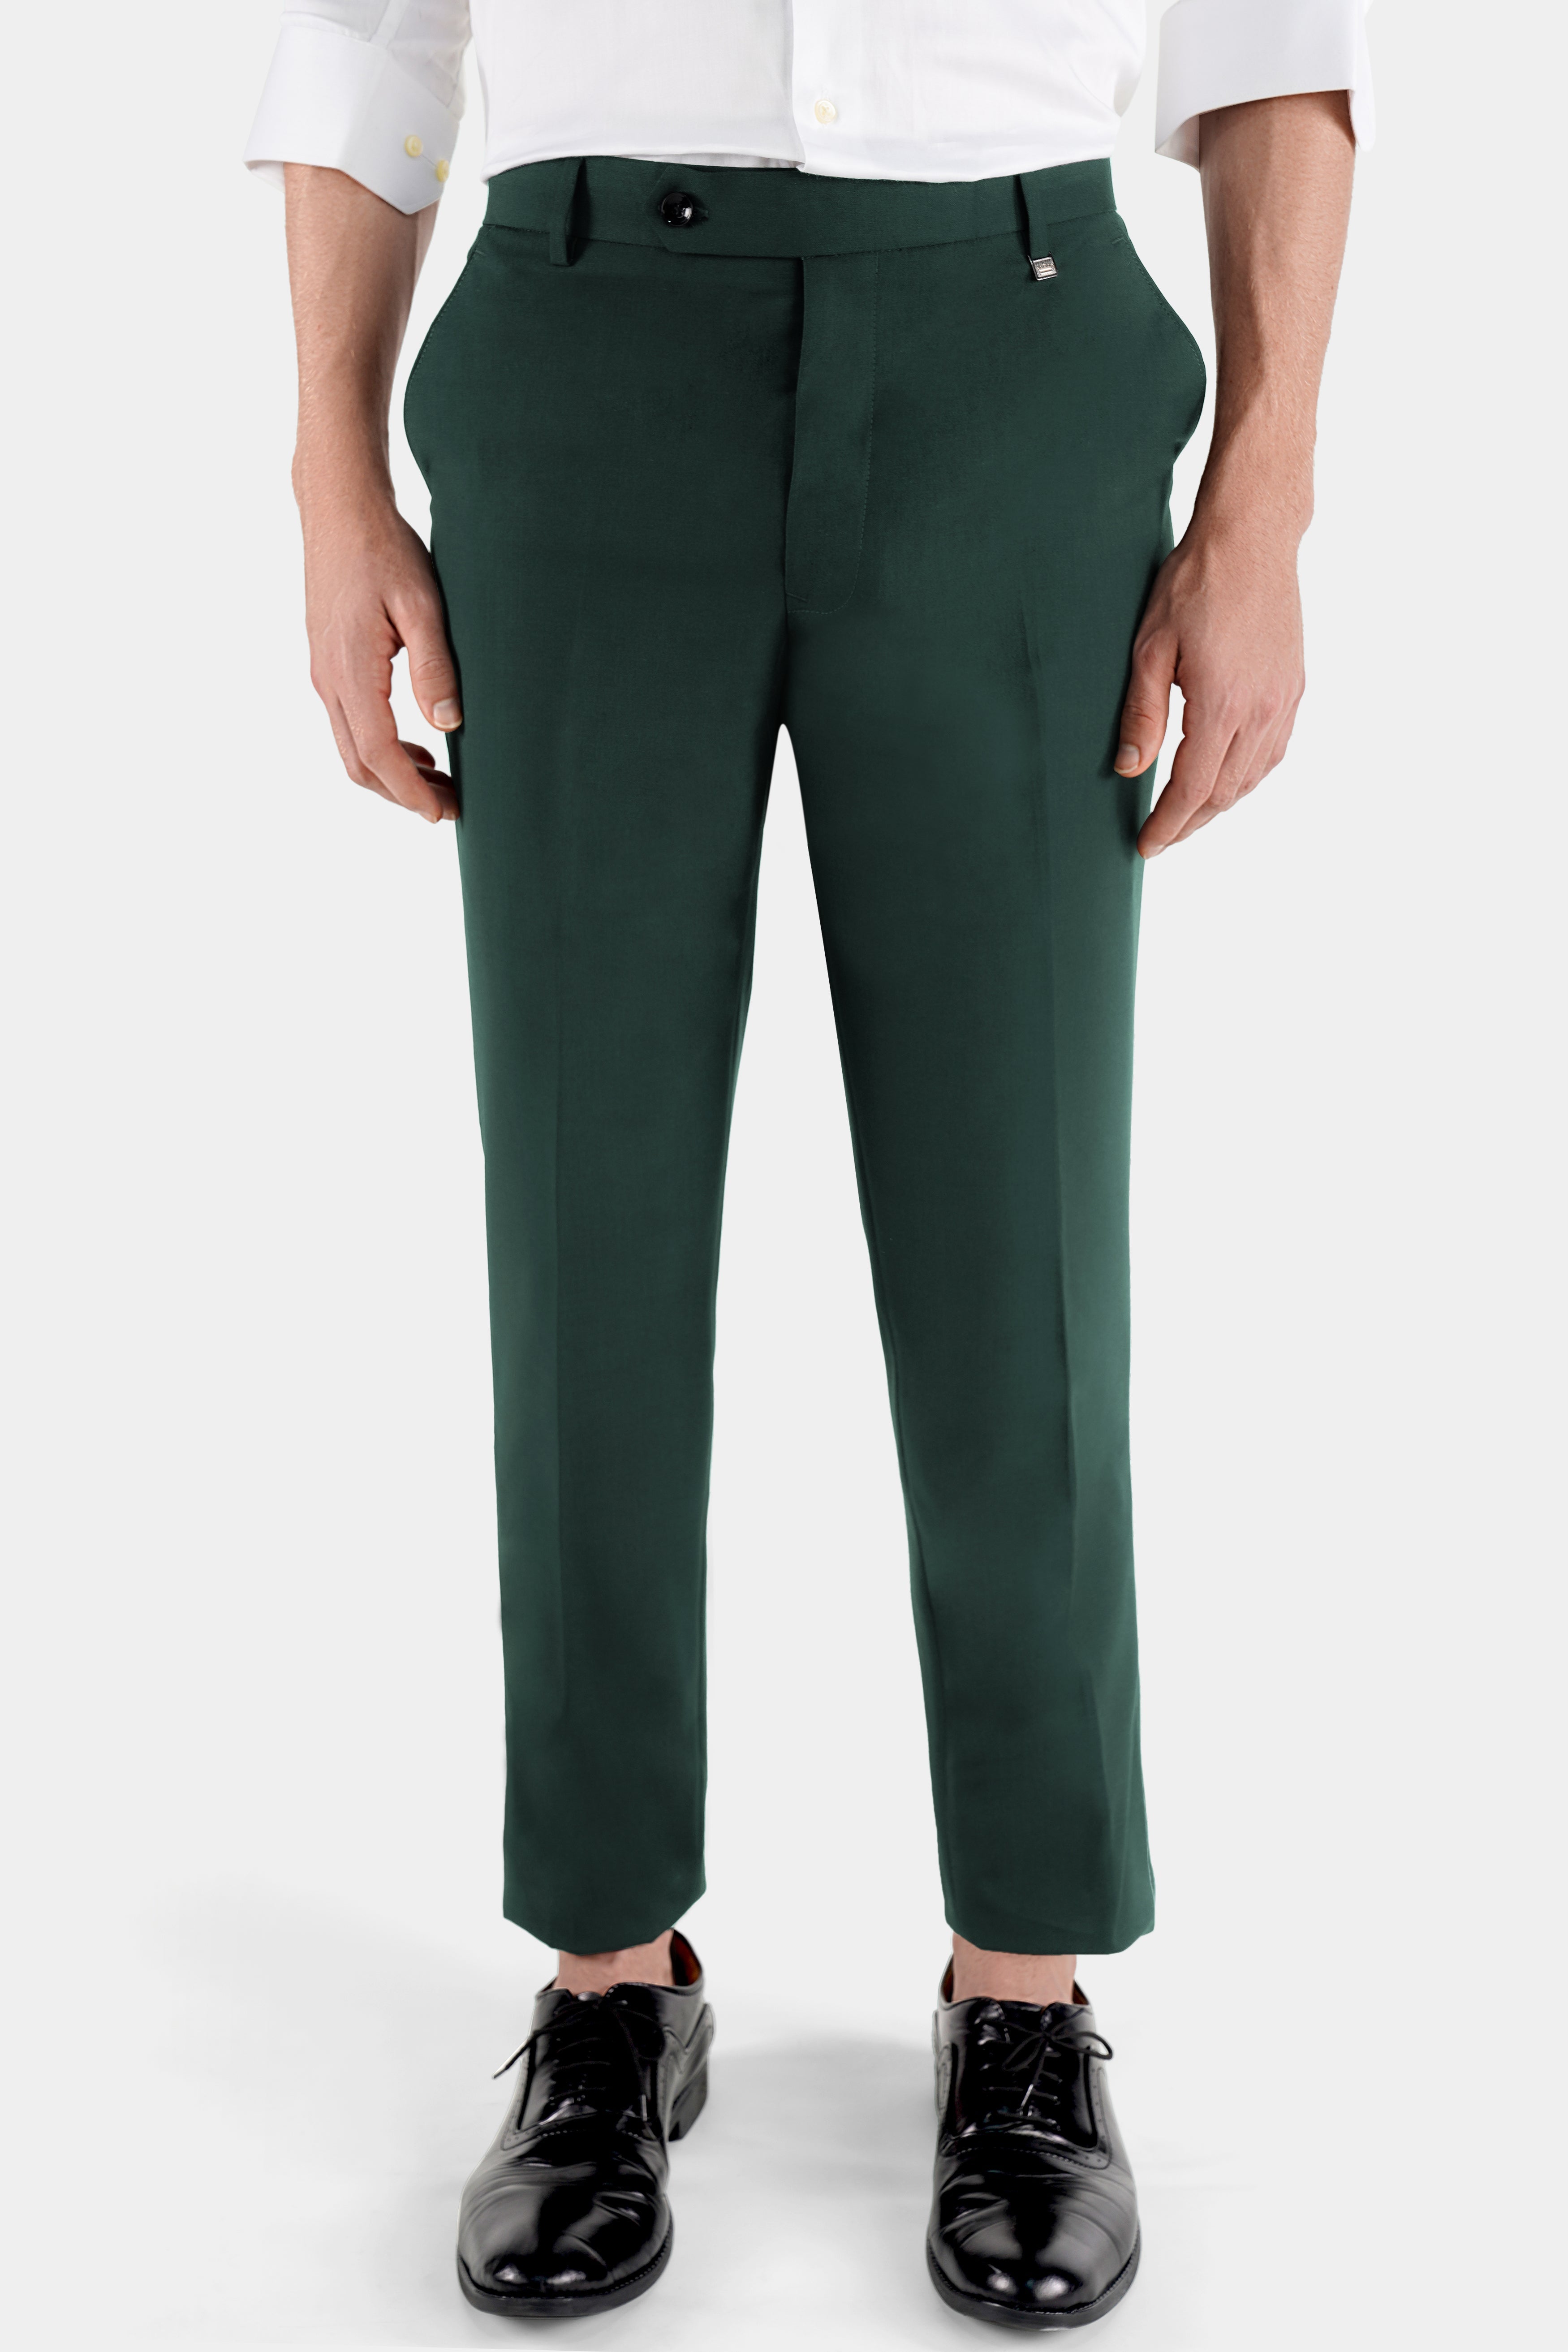 Moss Green Colour Cotton Pants For Men – Prime Porter